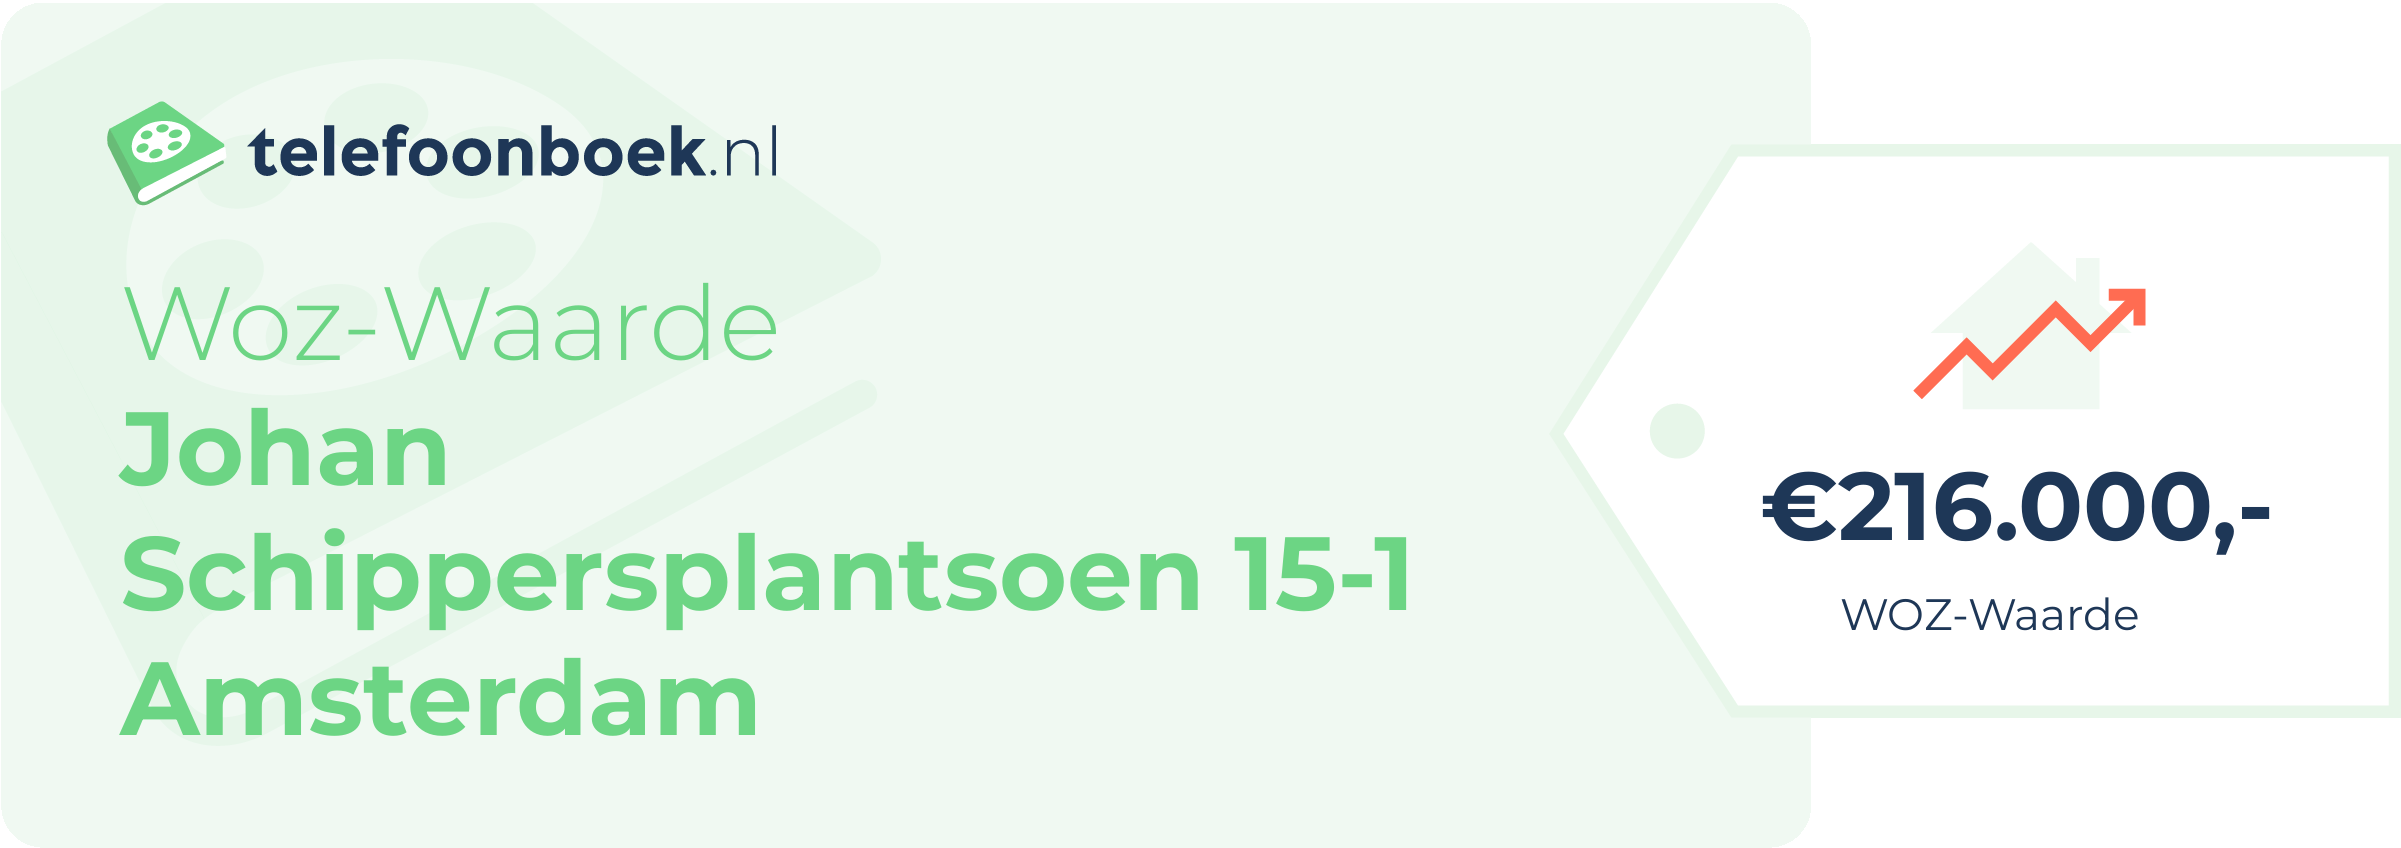 WOZ-waarde Johan Schippersplantsoen 15-1 Amsterdam